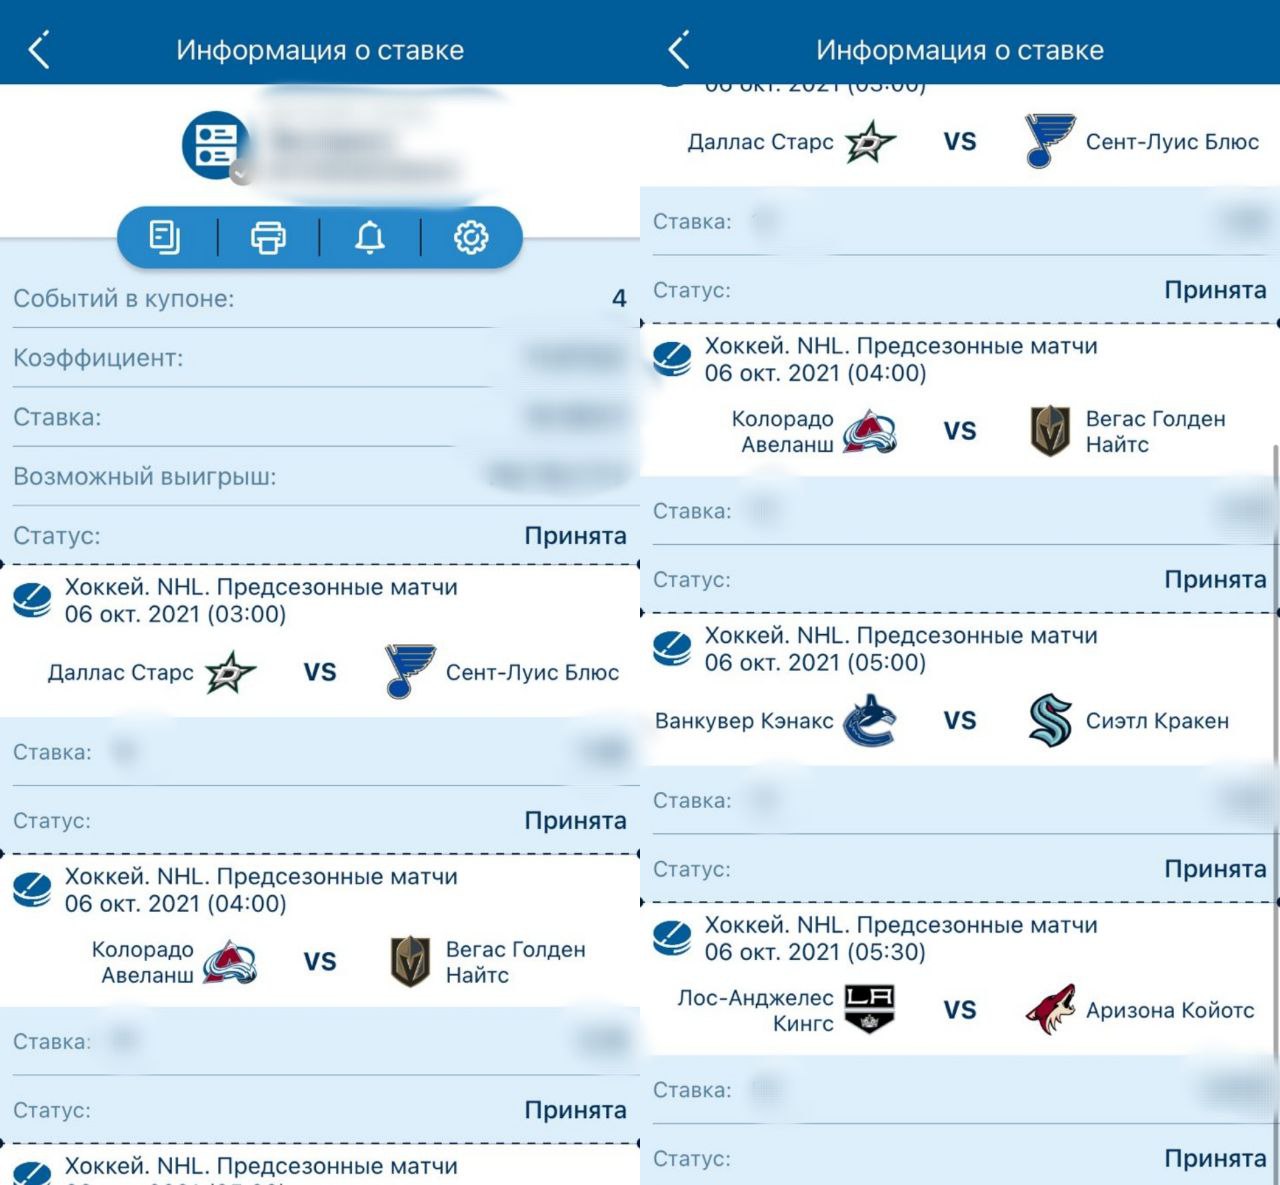 Каналы Telegram о прогнозах и ставках на спорт